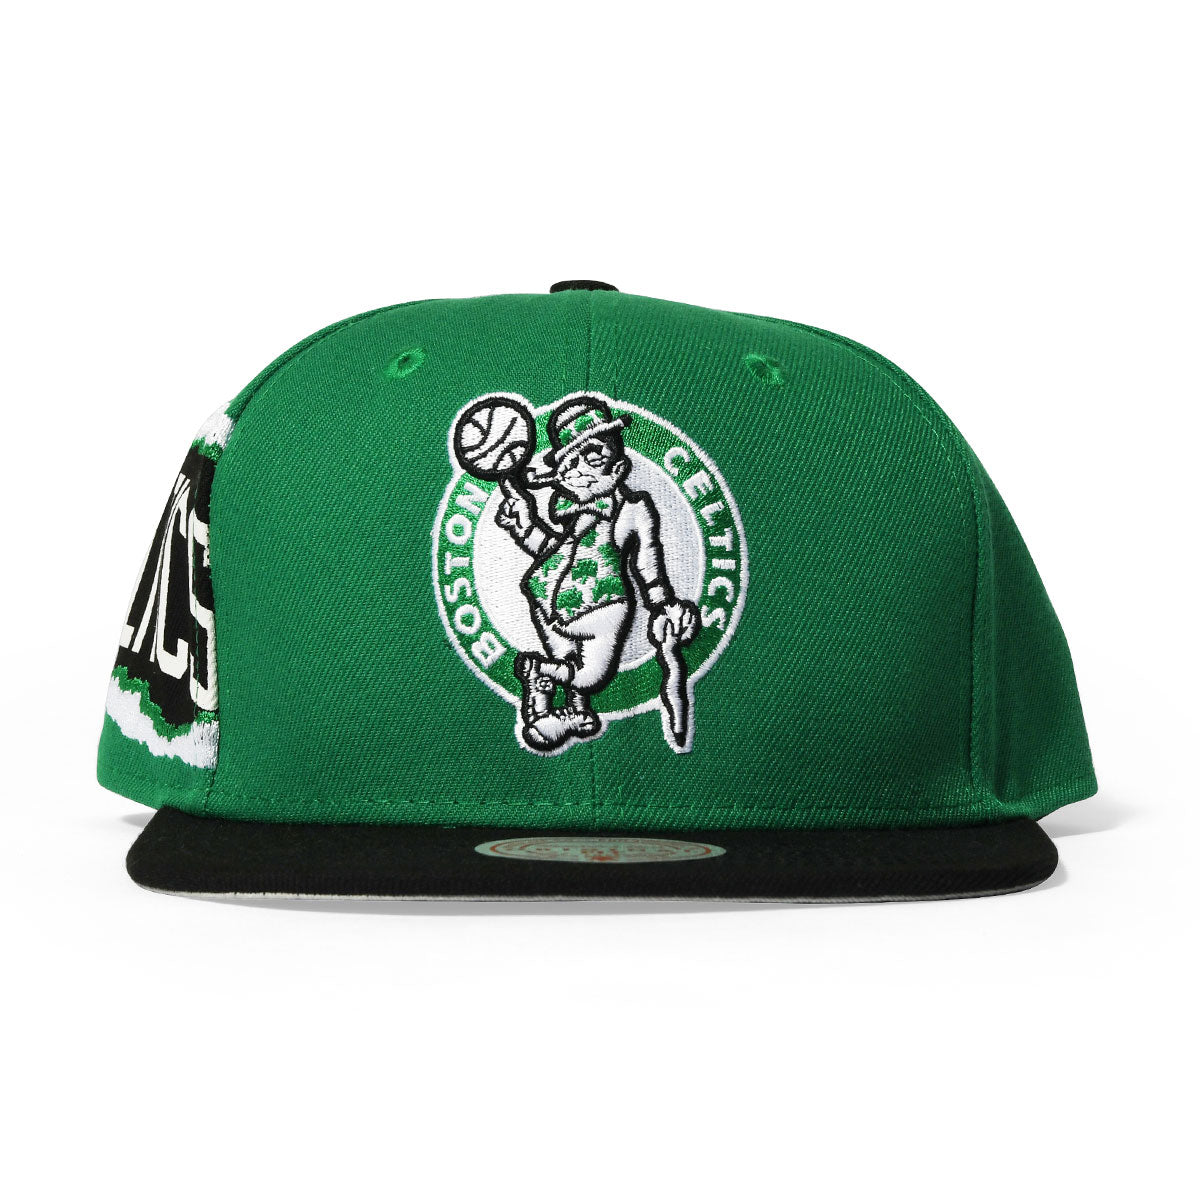 Mitchell＆Ness B Celtics NBA HHSS3464-BCE Jumbotron Snapback HWC Green